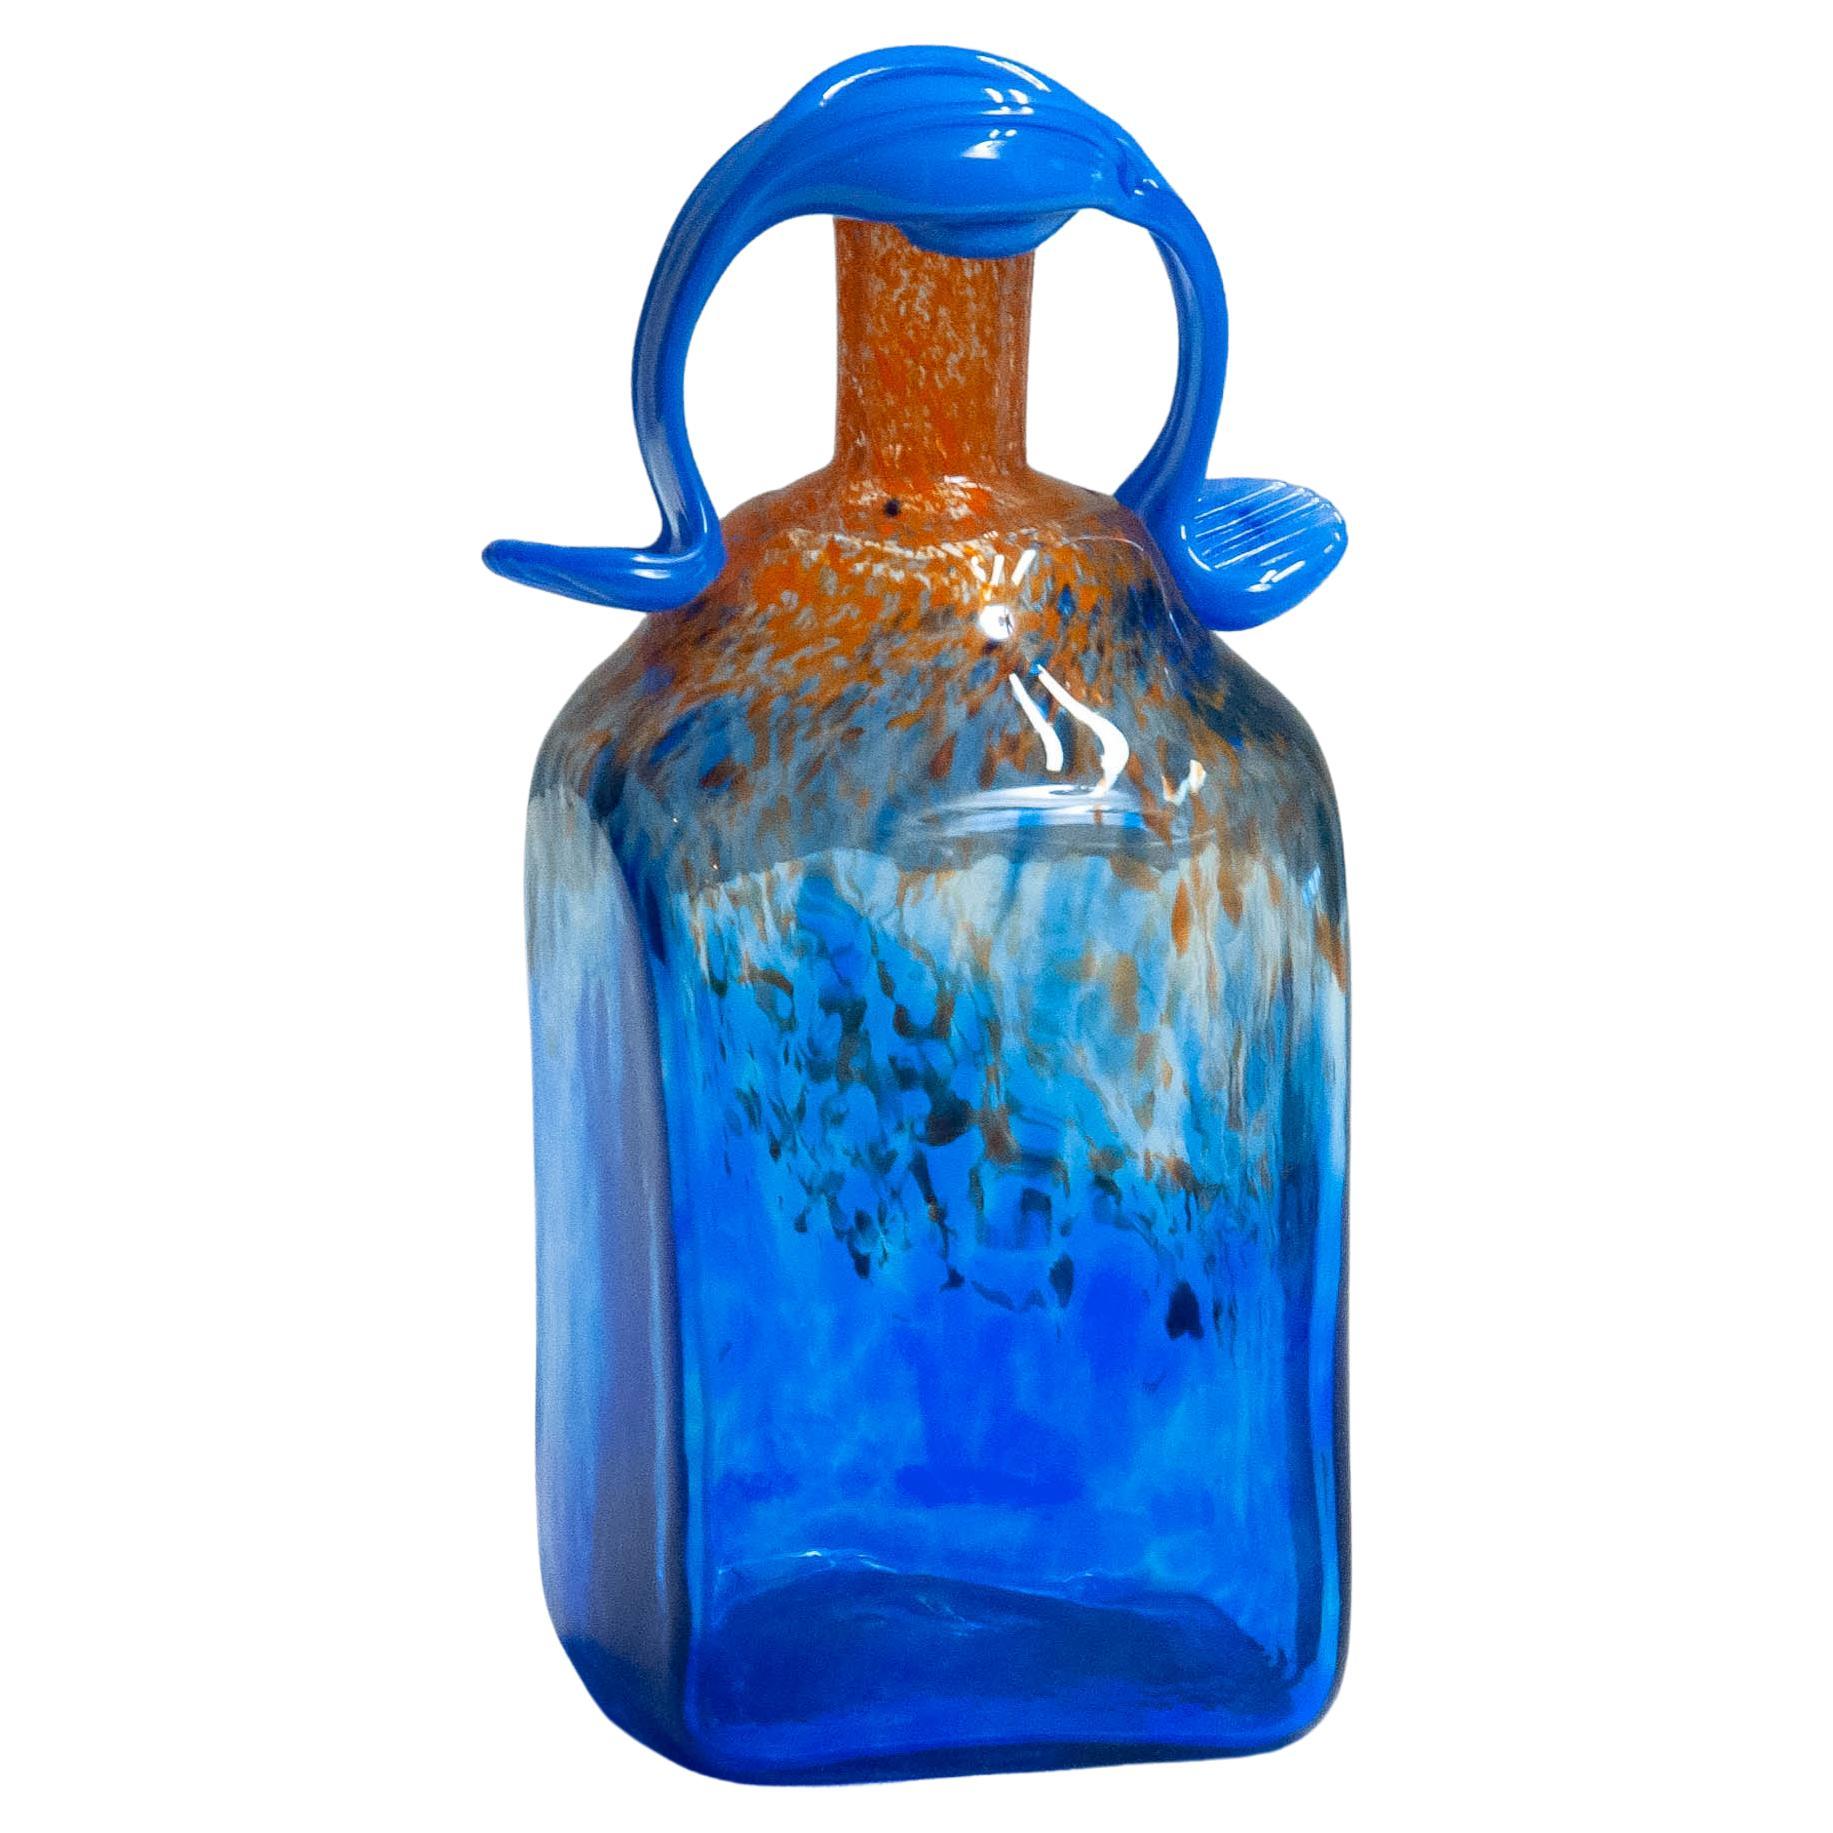 Bouteille en verre d'art bleu des années 1980 fabriquée à la main par Staffan Gellerstedt au Studio Glashyttan